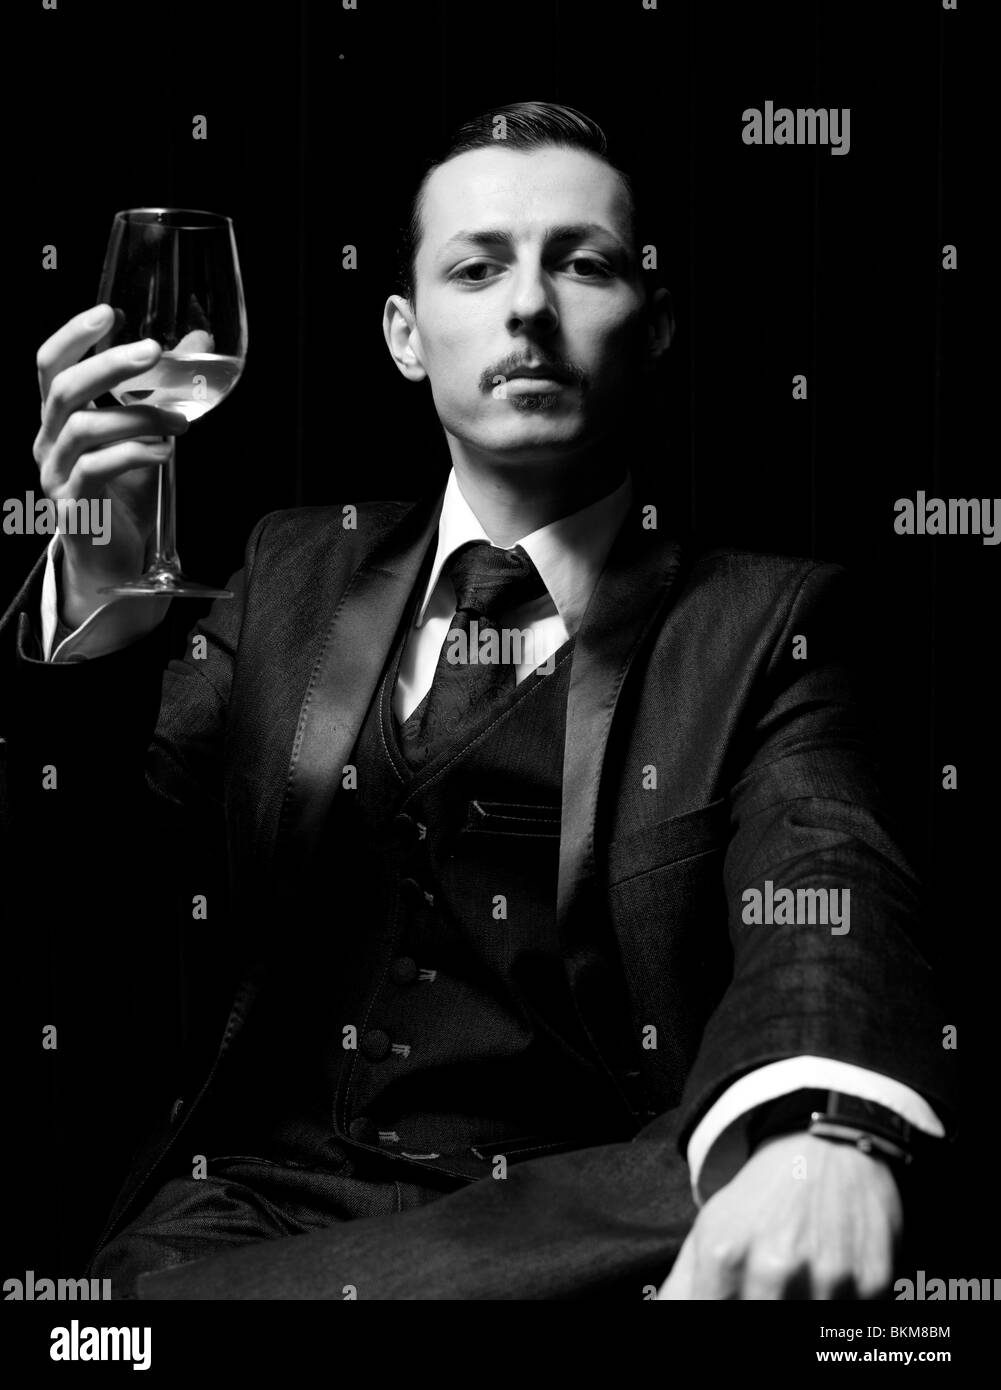 Ritratto bianco e nero di un uomo solenne che alza un bicchiere di vino bianco, Londra, Inghilterra, UK. Foto Stock